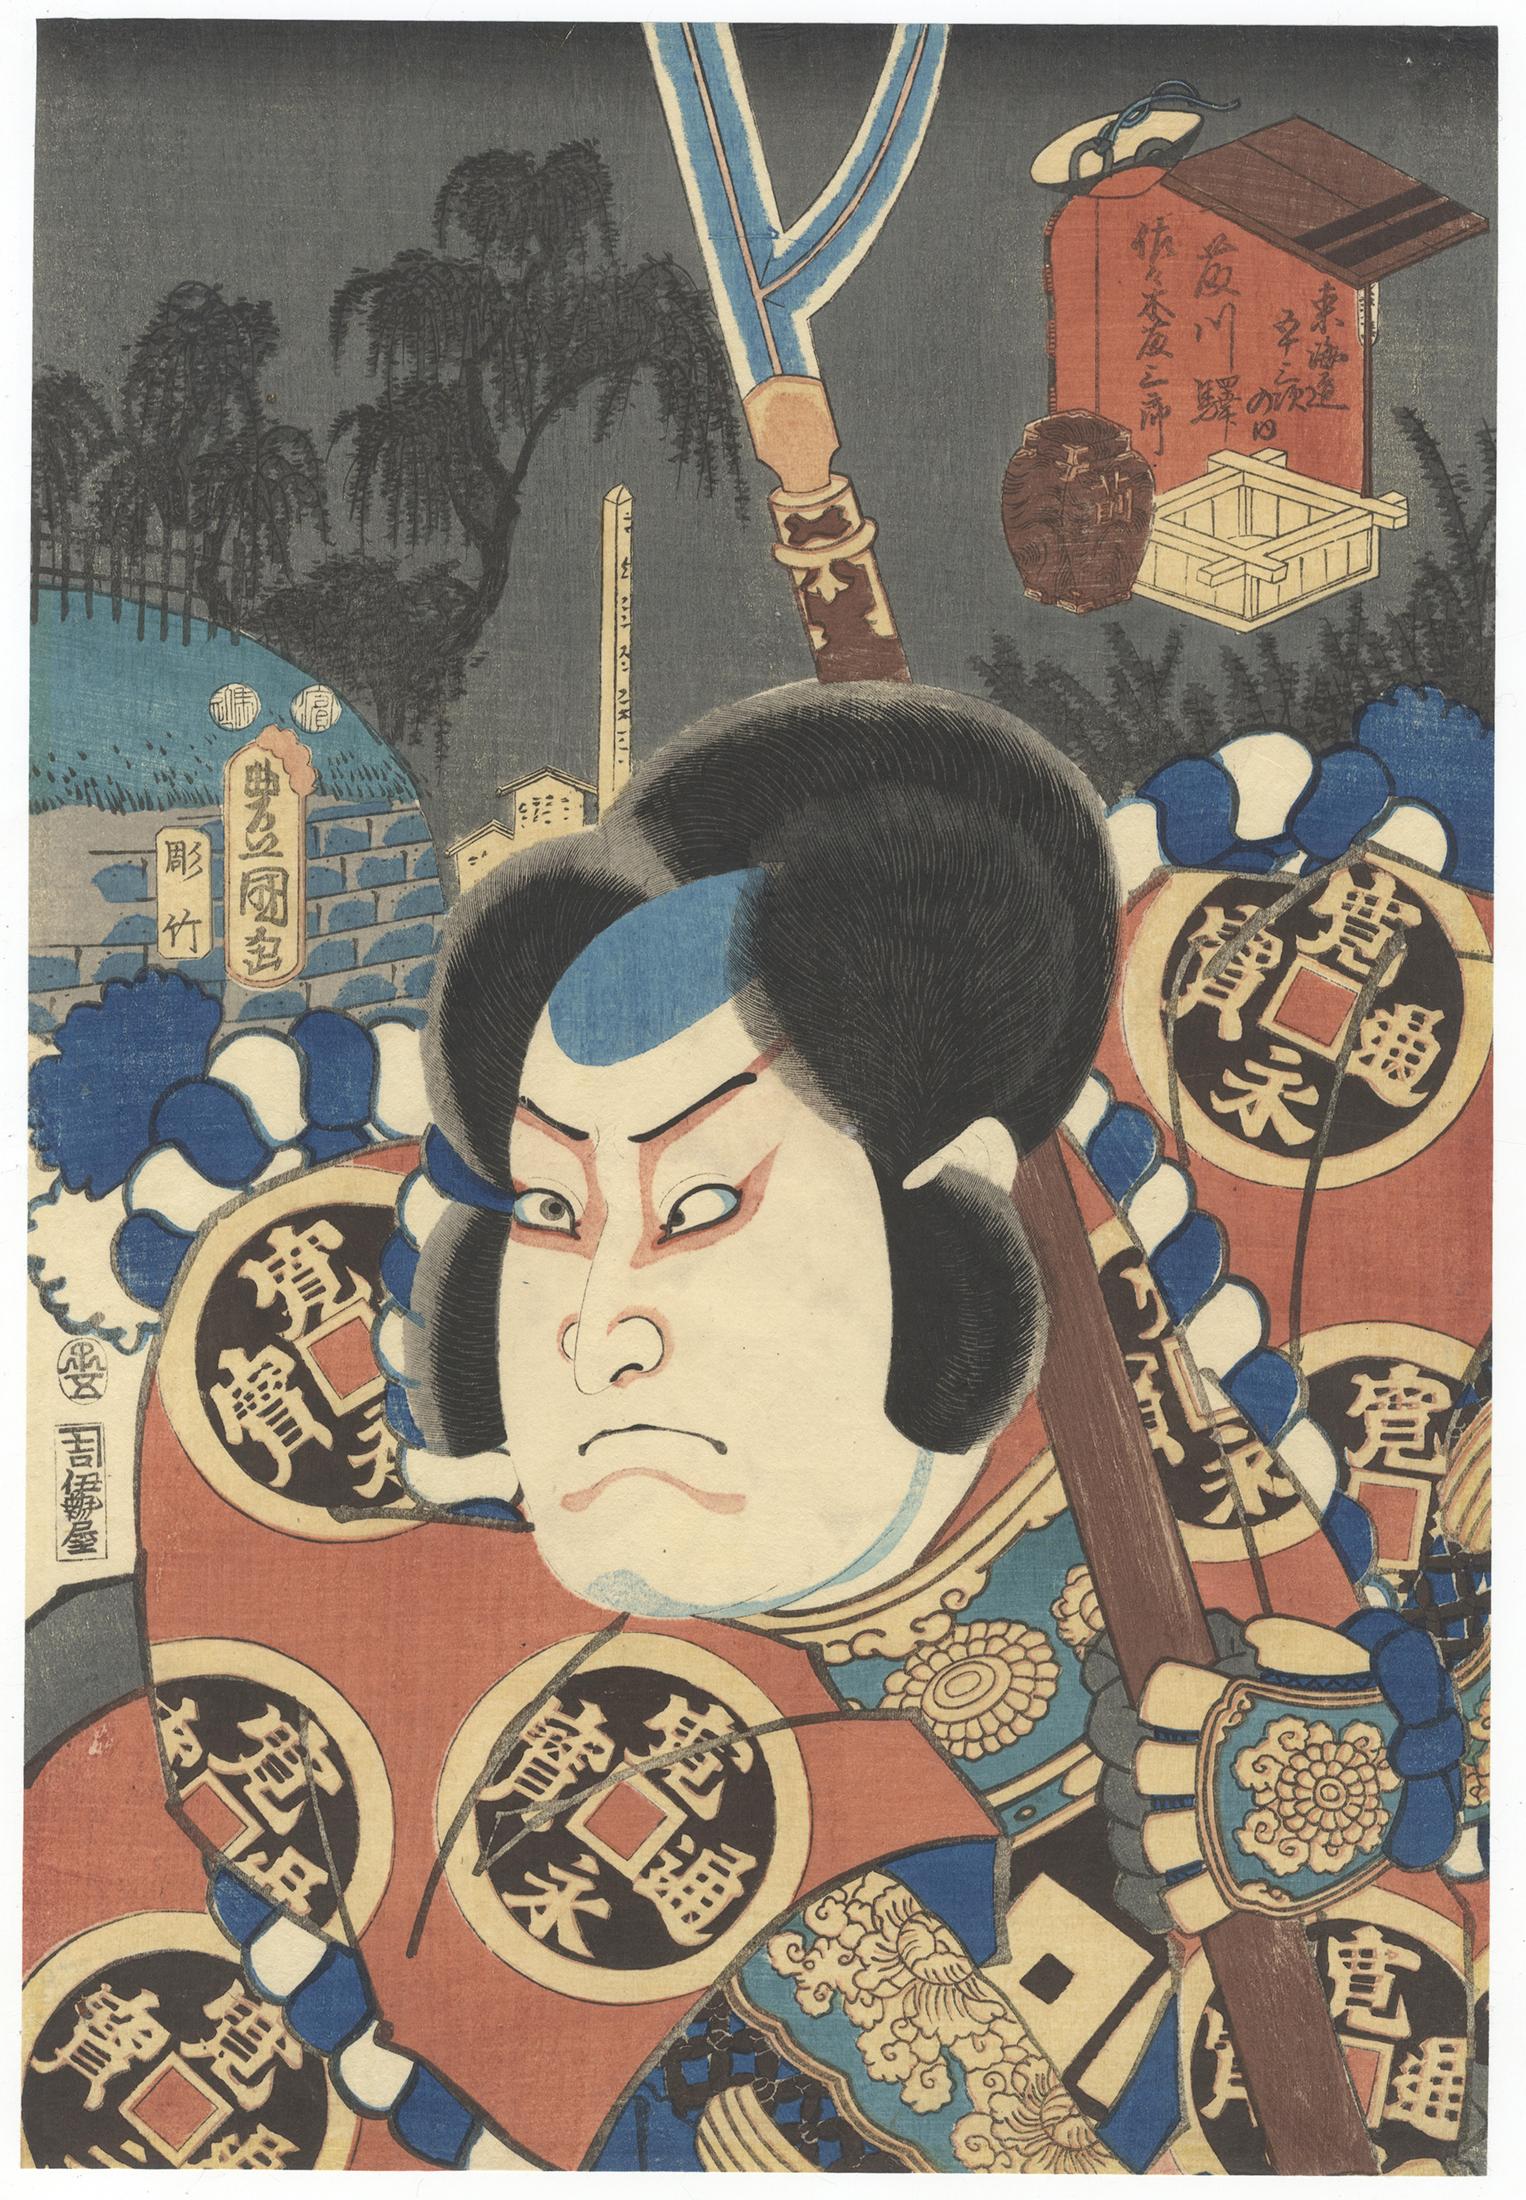 Utagawa Kunisada (Toyokuni III) Portrait Print - Toyokuni III Kabuki Portrait Ukiyo-e Japanese Woodblock Print Samurai Warrior